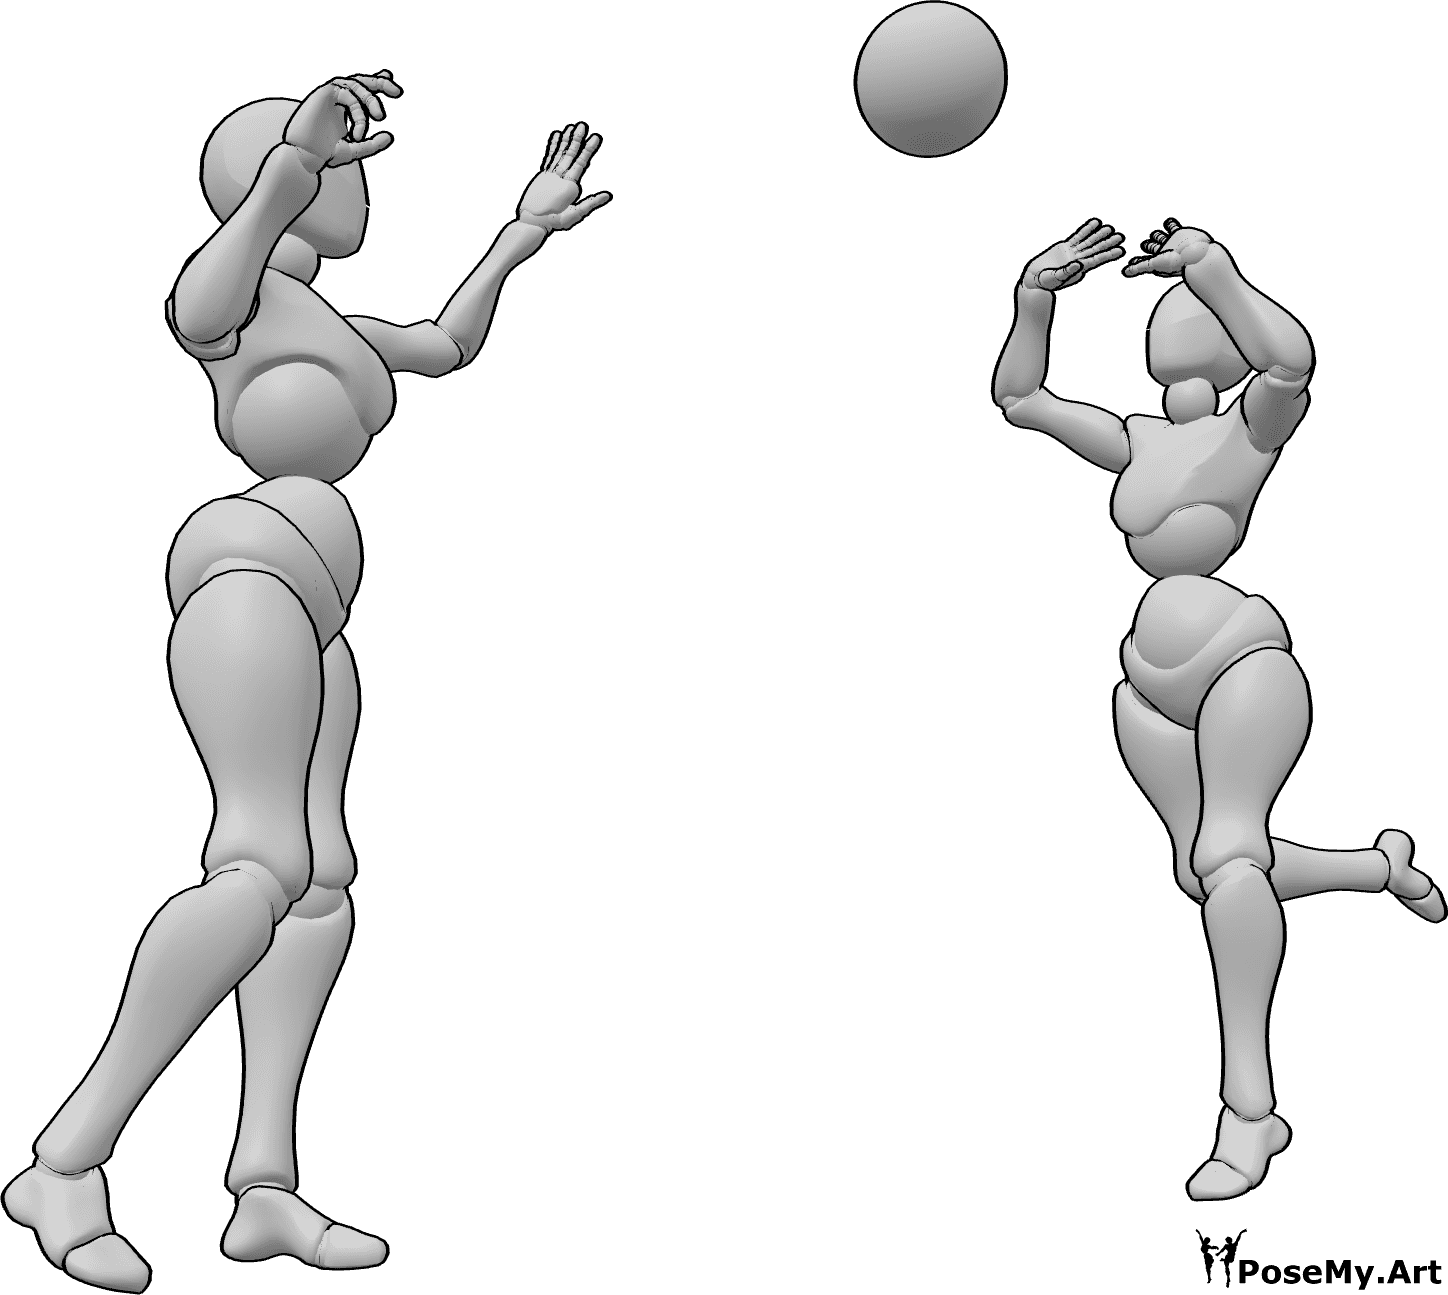 Referencia de poses- Femenino lanzando pelota pose - Dos mujeres juegan con una pelota, pasándosela la una a la otra.